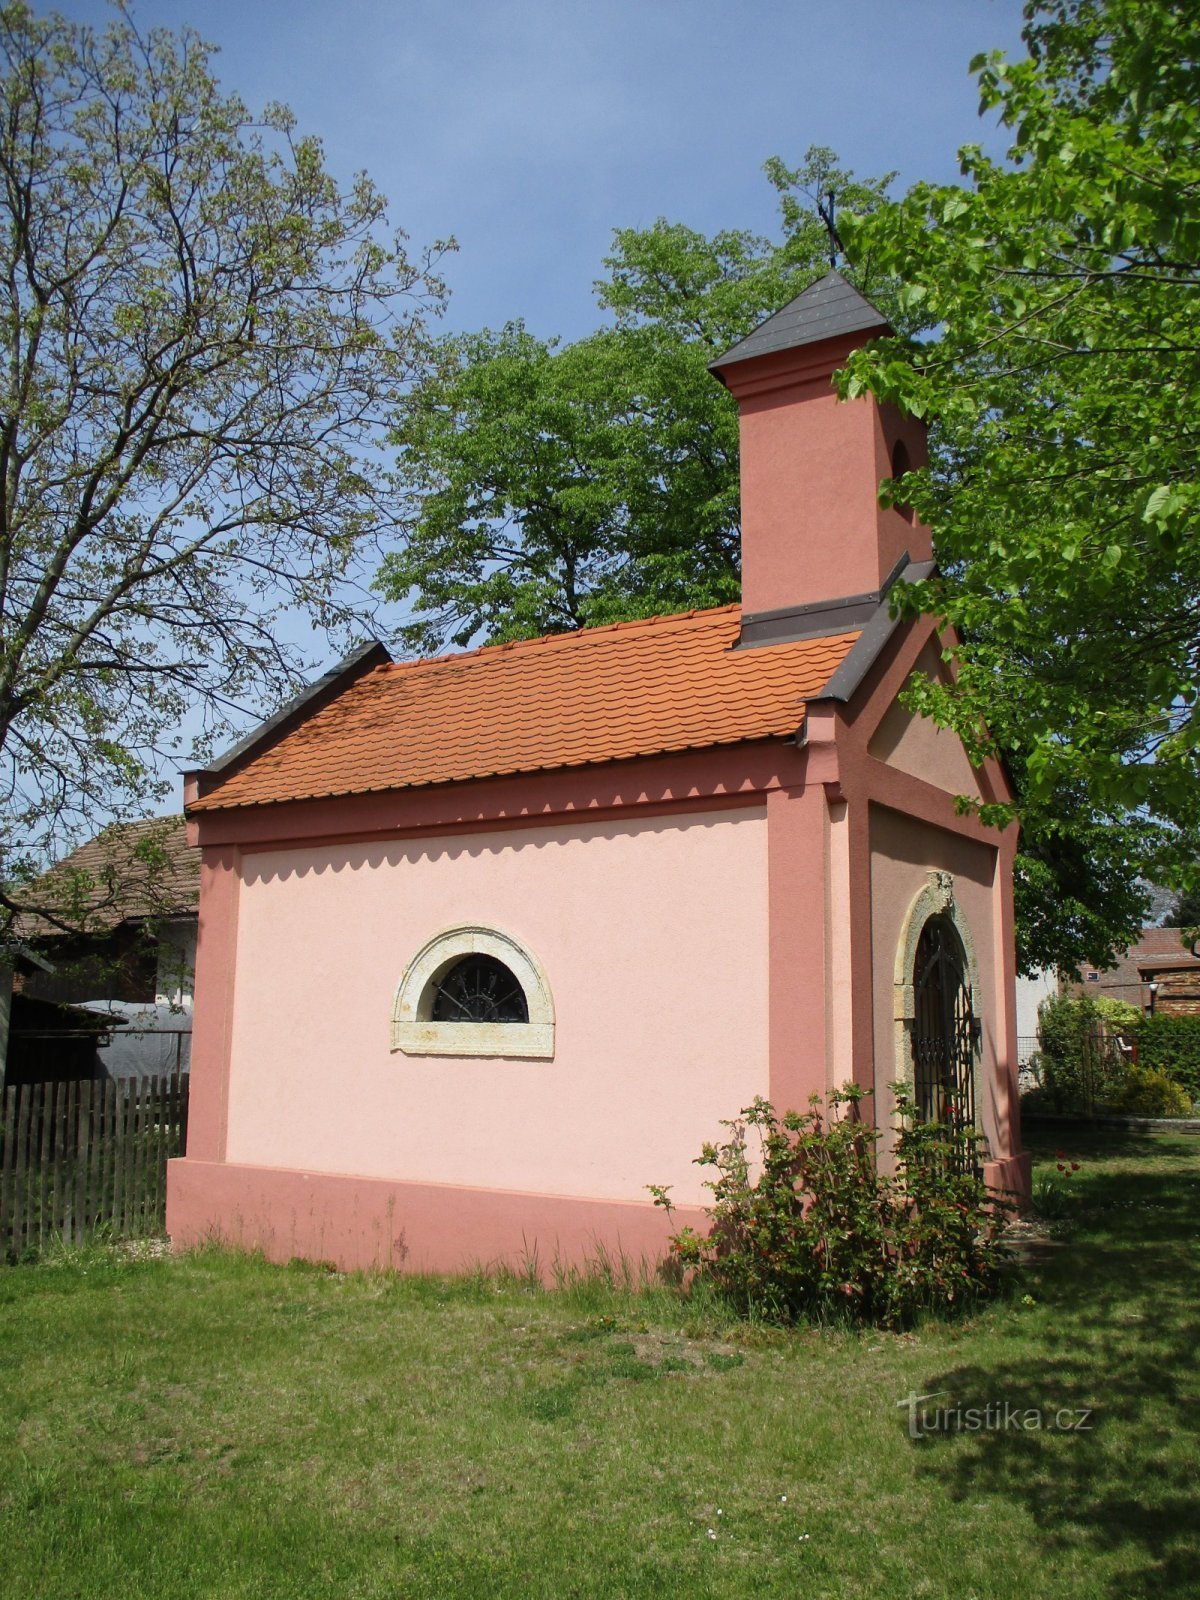 Chapel (Kunčice, 8.5.2020/XNUMX/XNUMX)